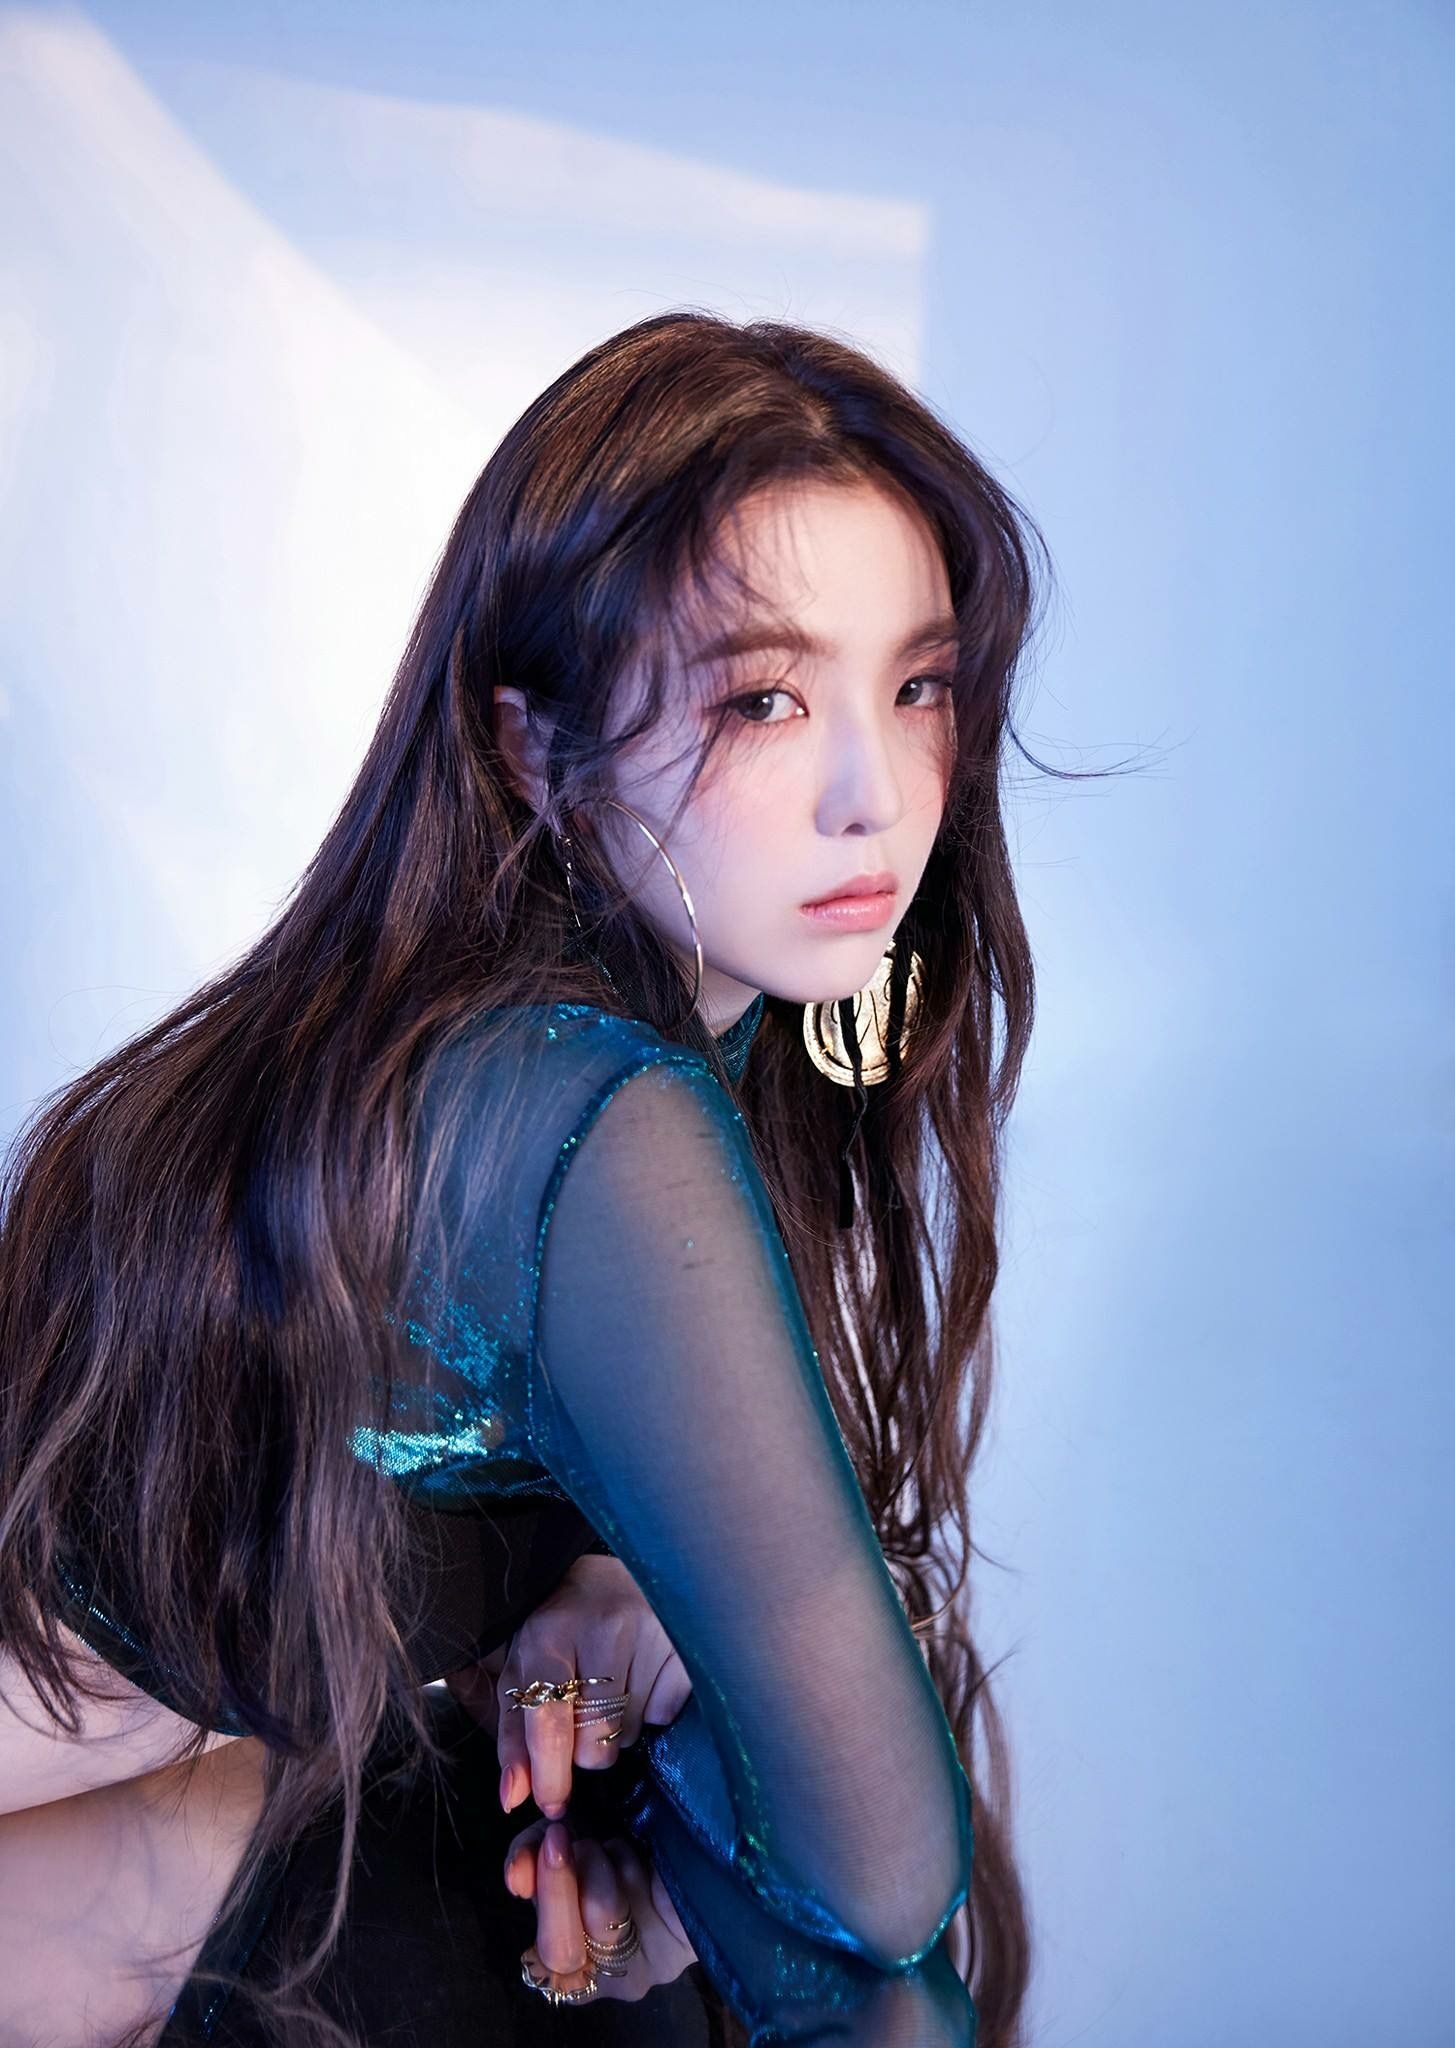 Irene From Red Velvet For Perfect Album Teaser Image Bae